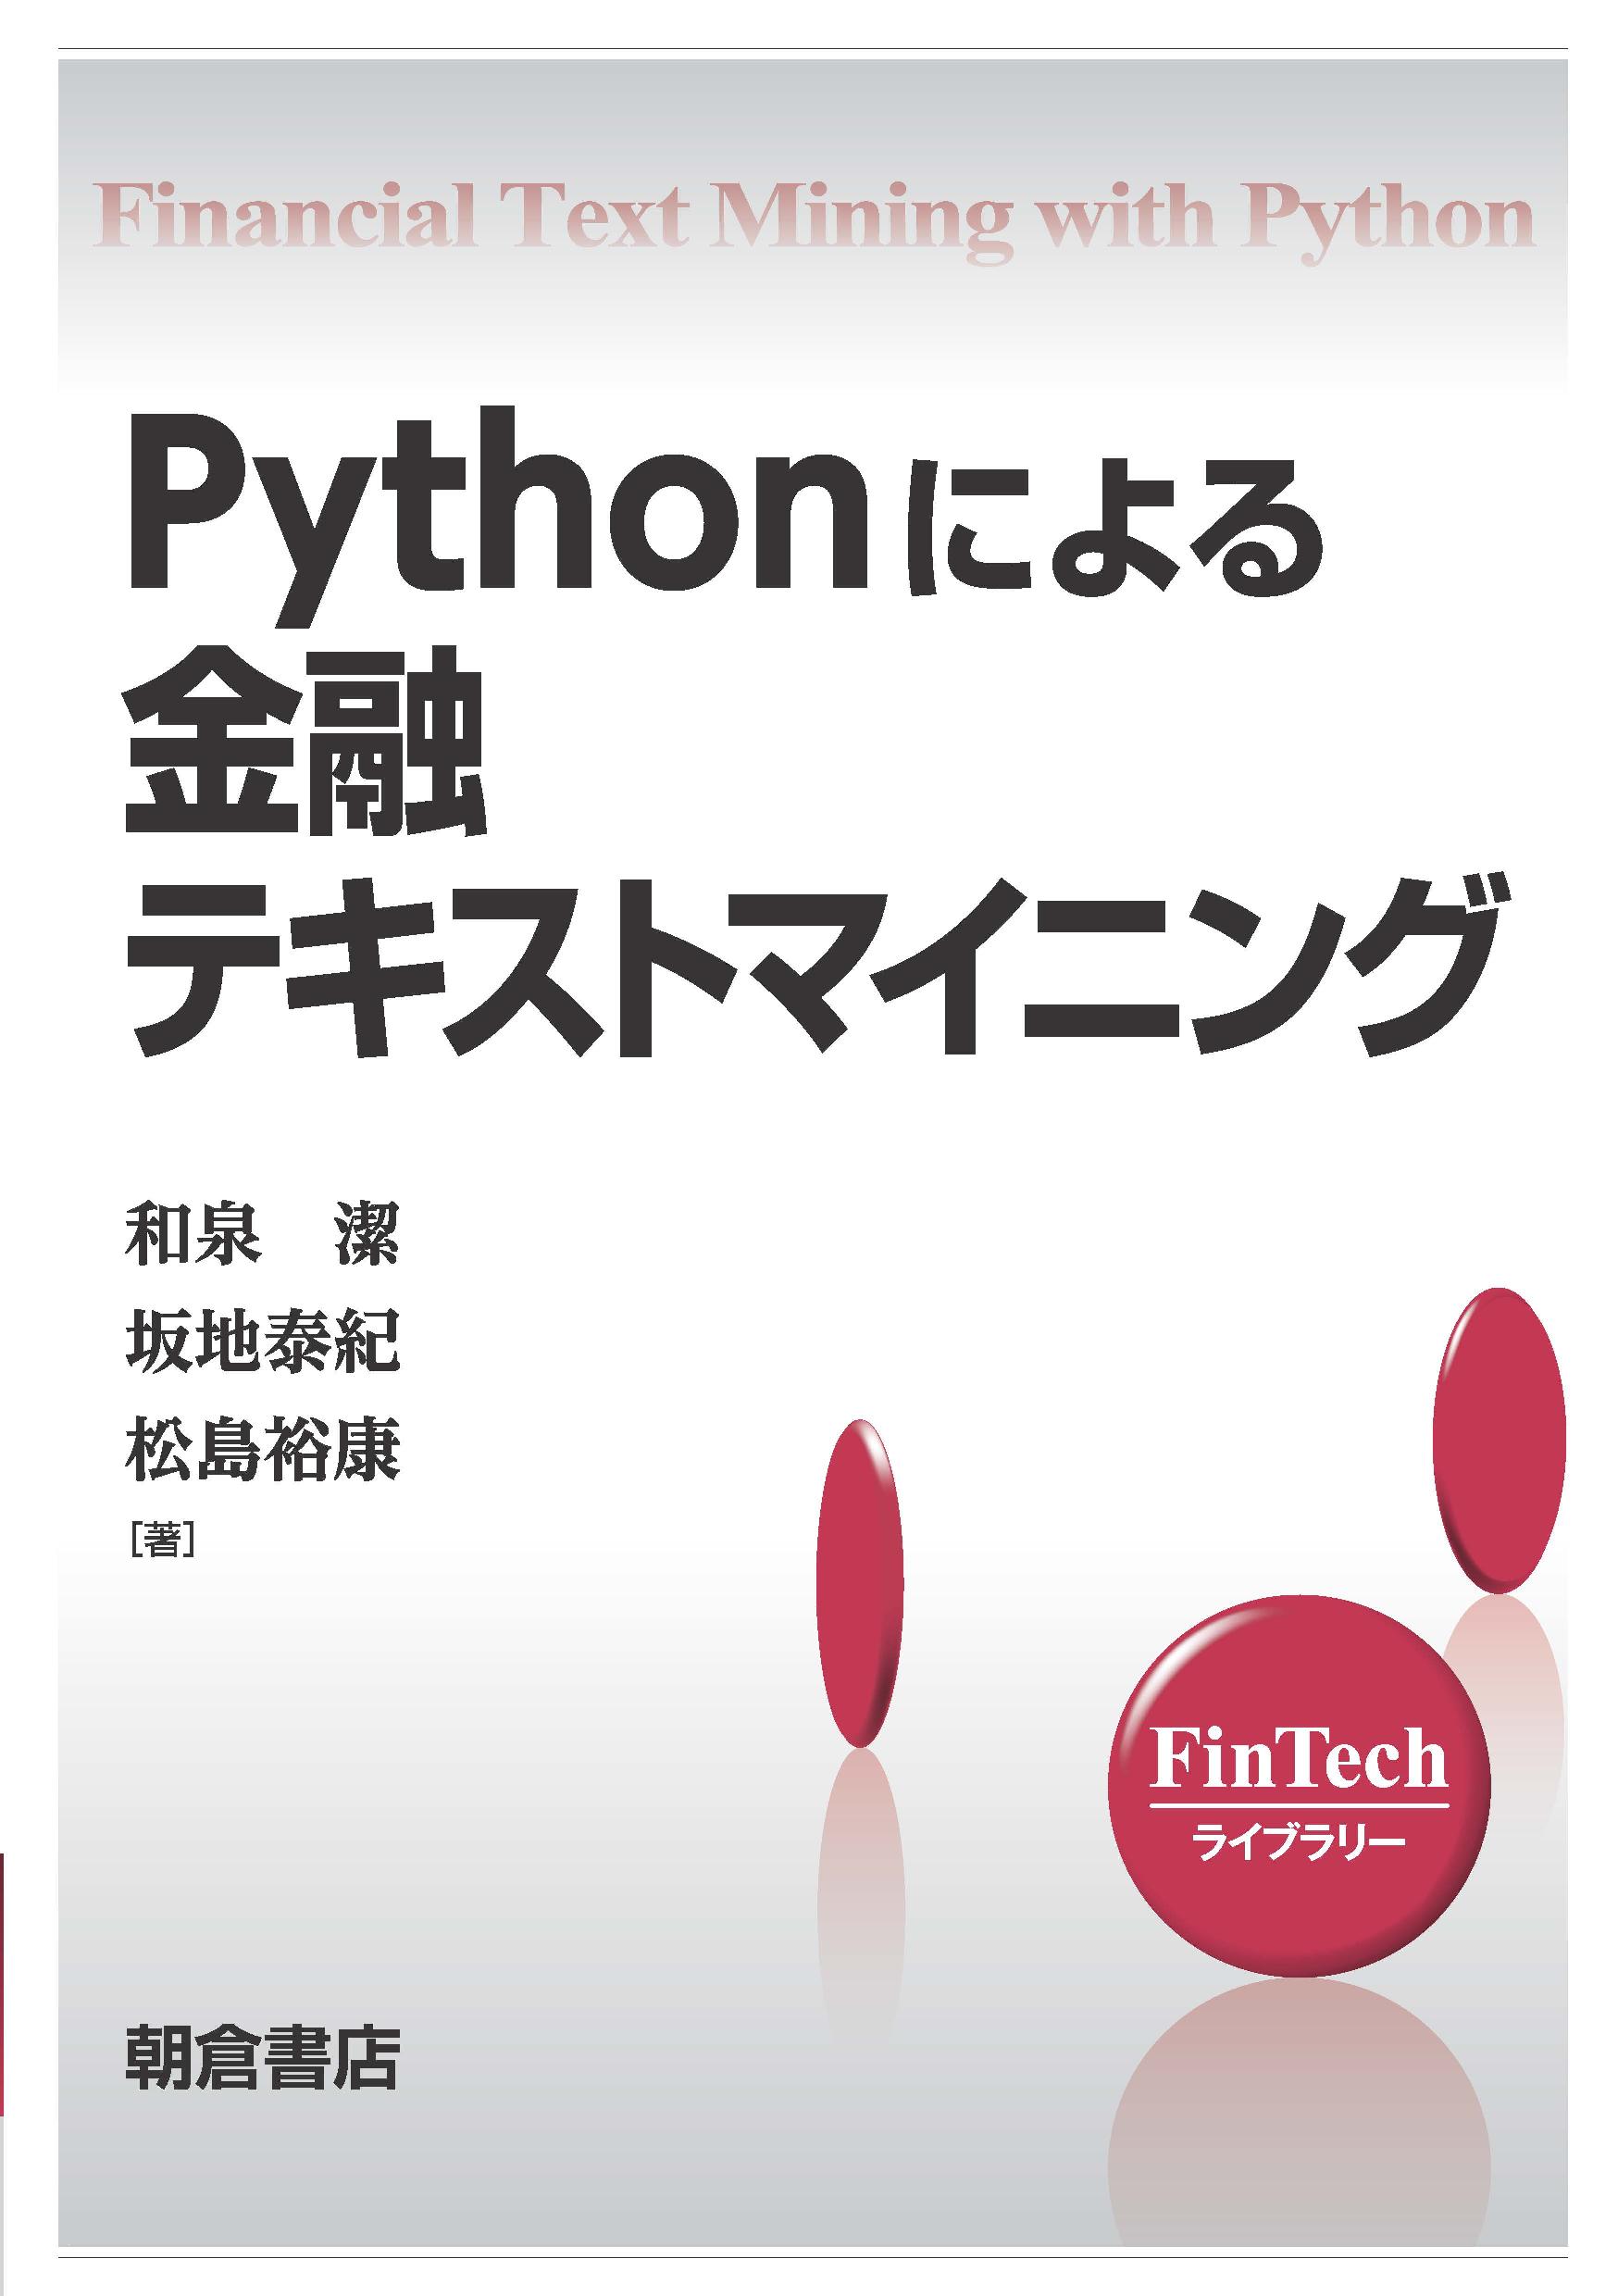 Pythonによる金融テキストマイニングの商品画像